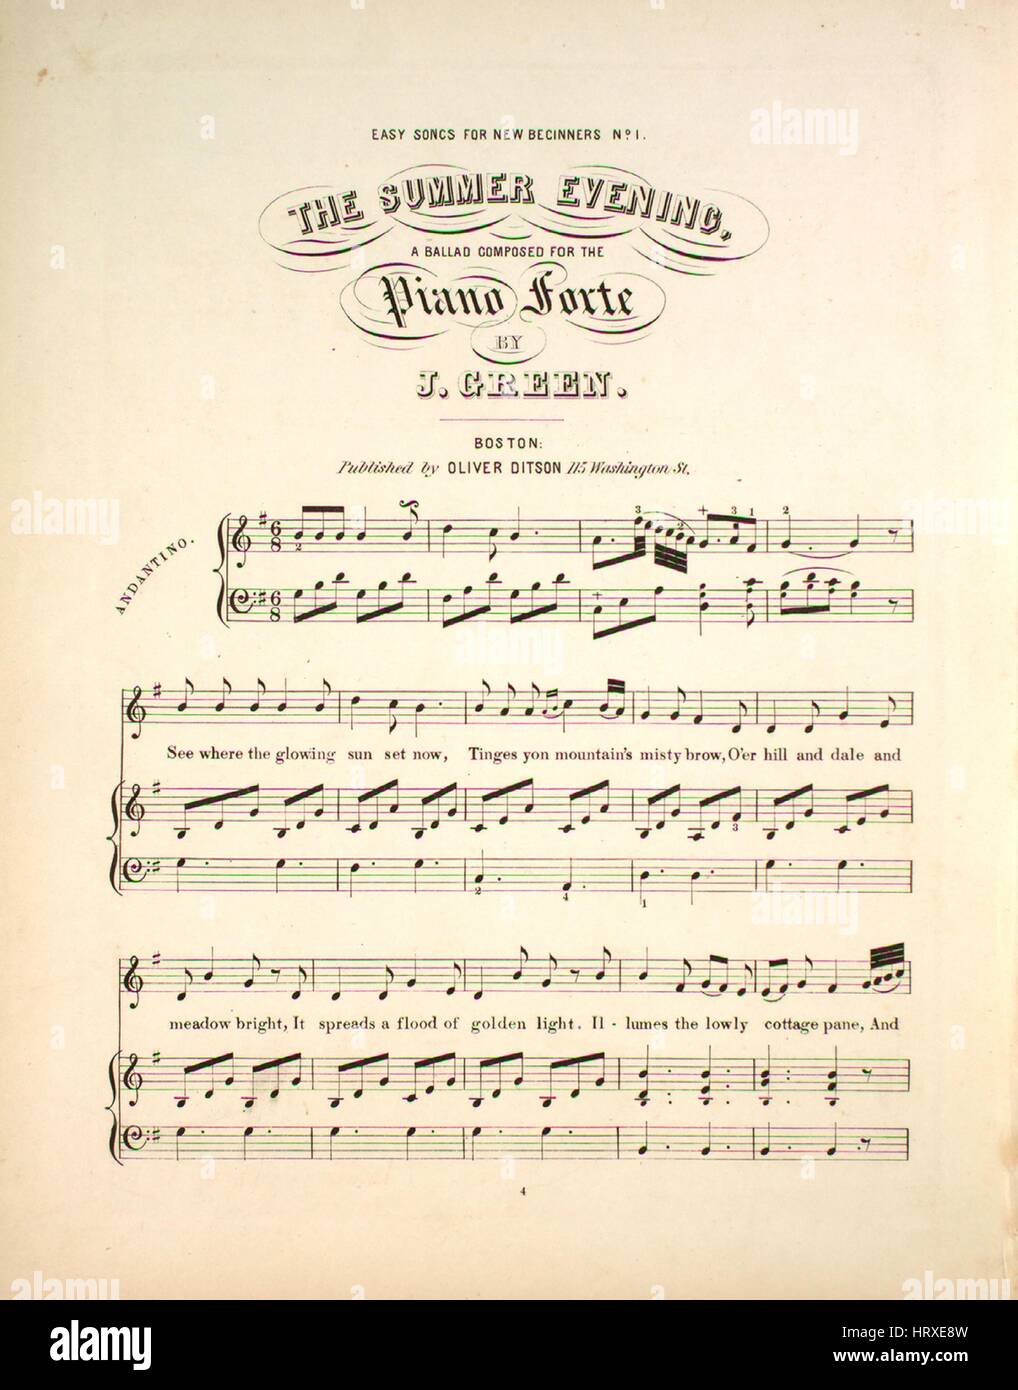 Titelbild der Noten des Liedes "Einfache Lieder für neue Anfänger Nr. 1 der  Sommerabend", mit ursprünglichen Autorschaft Noten lesen "A Ballade  komponiert für das Piano-Forte von J Green", USA, 1900. Der Verlag